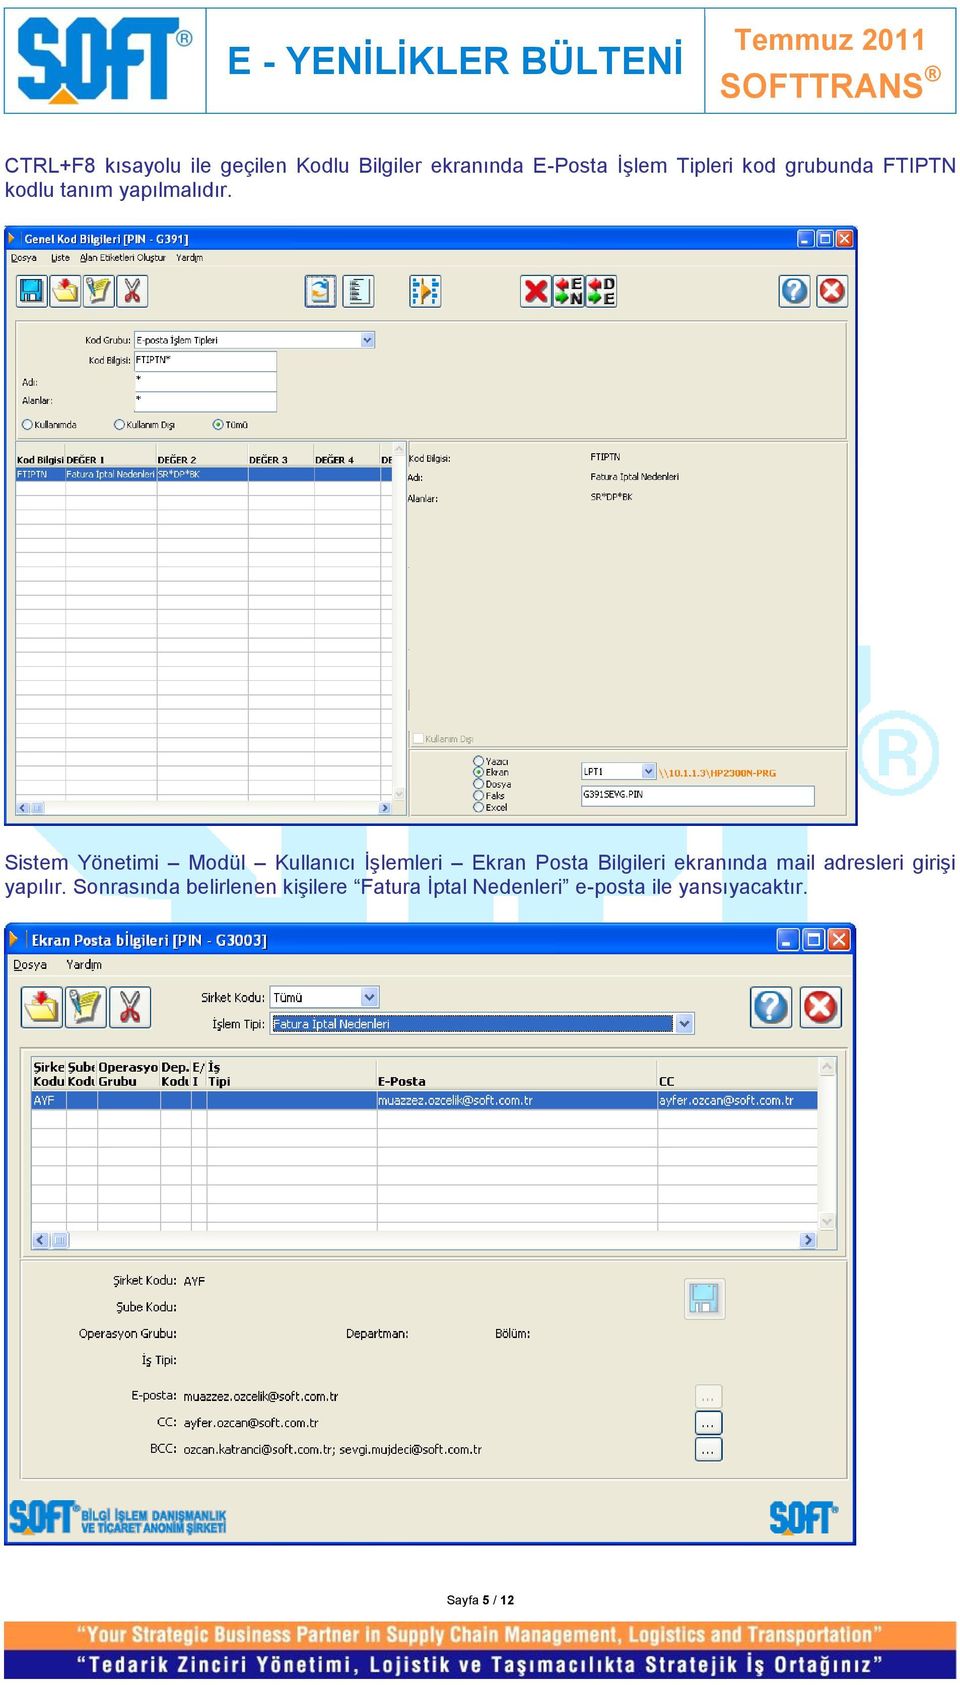 Sistem Yönetimi Modül Kullanıcı İşlemleri Ekran Posta Bilgileri ekranında mail